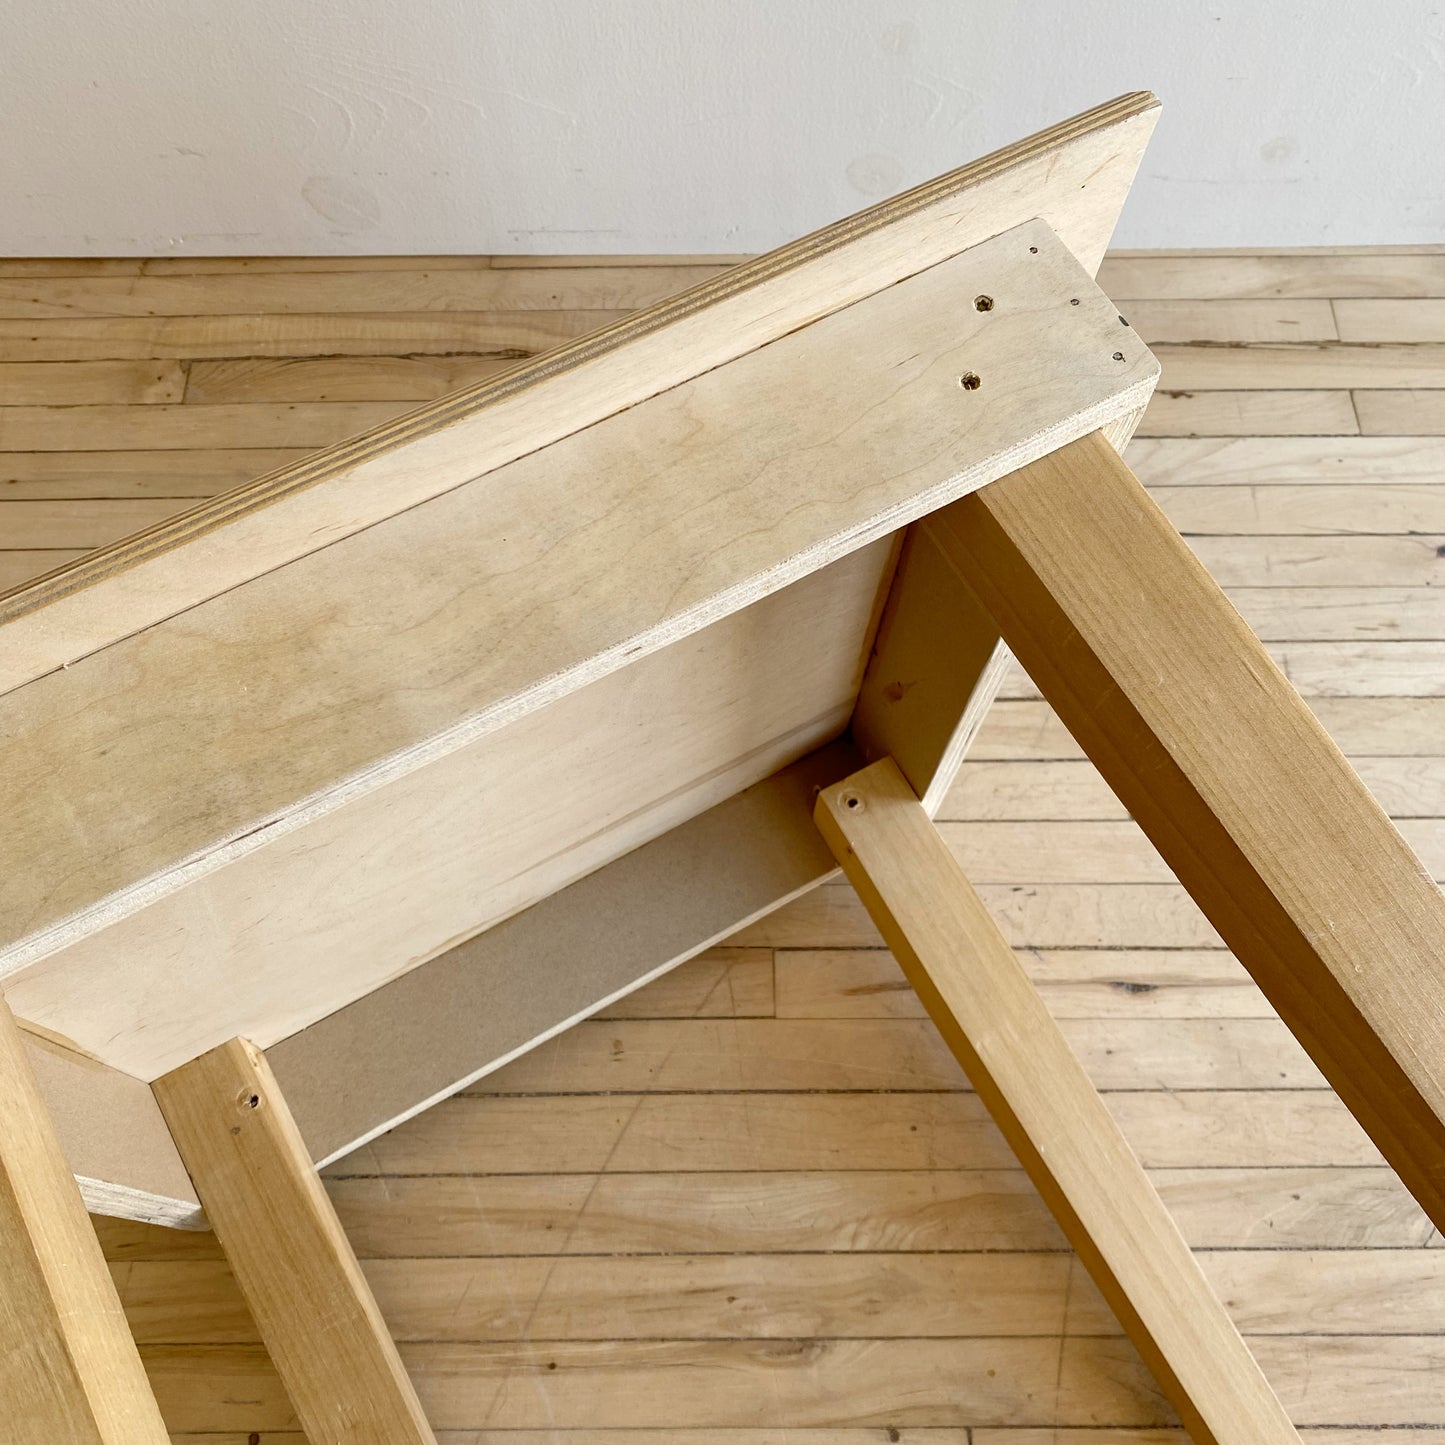 Handmade Wood Side Table